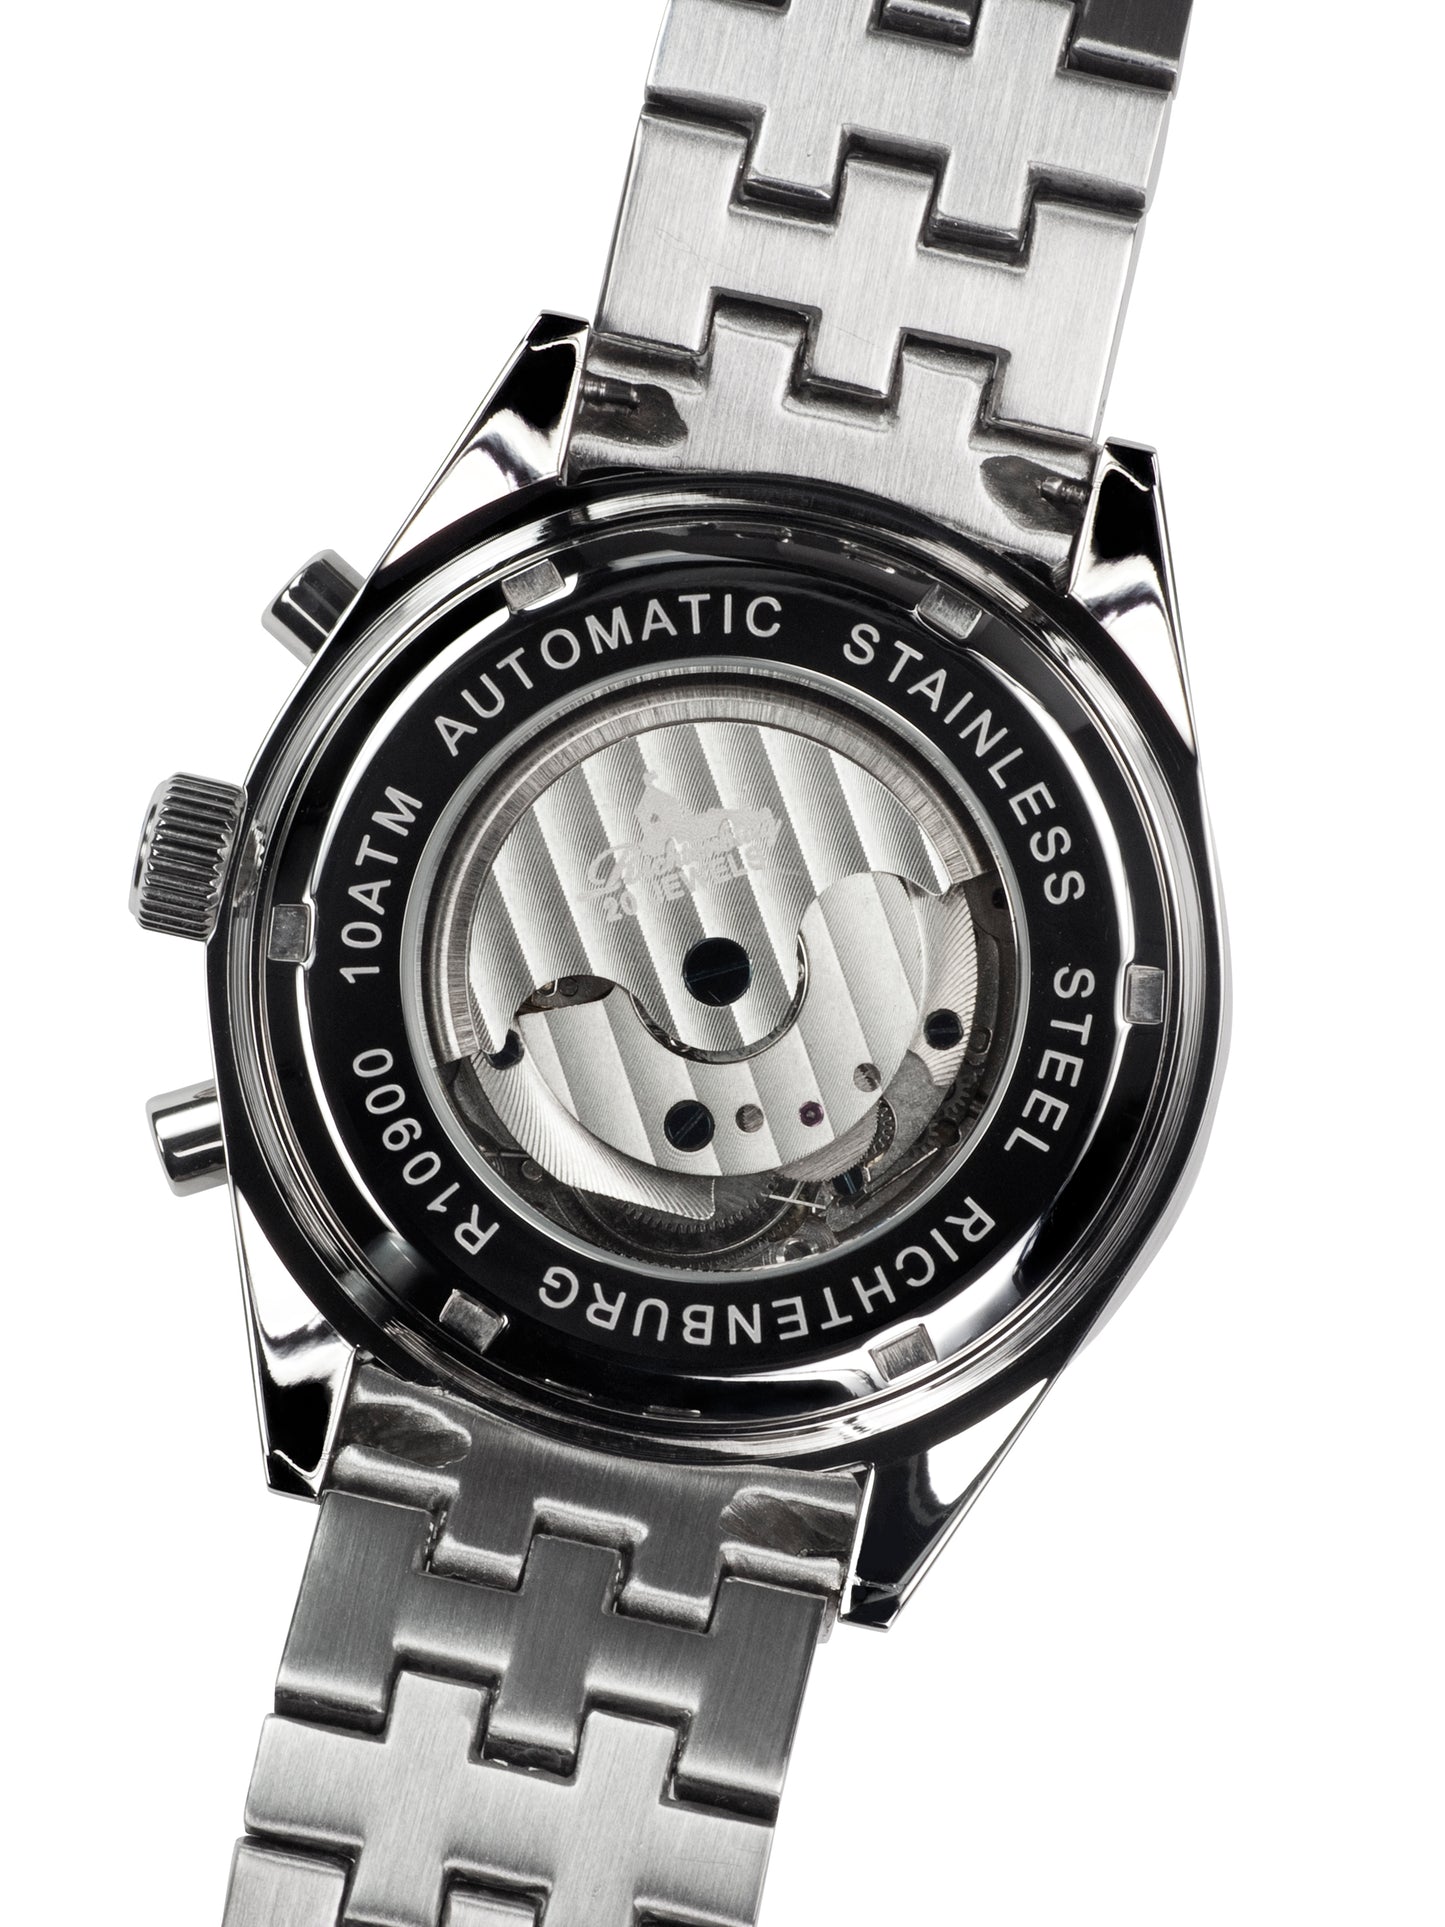 Automatic watches — Stahlfighter — Richtenburg — blue